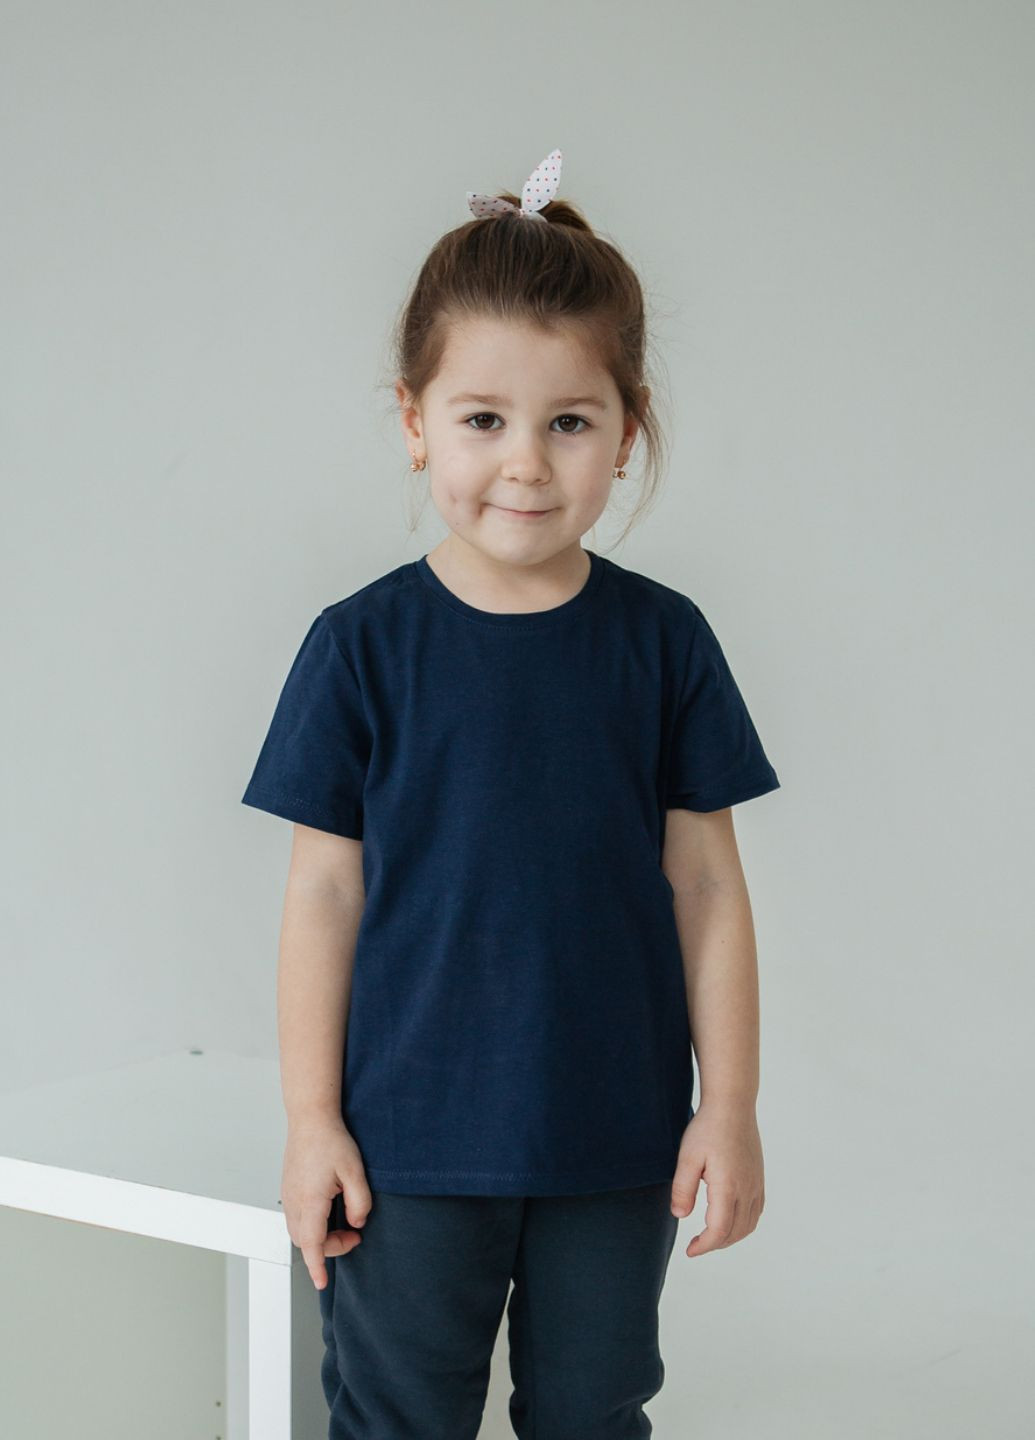 Синяя демисезонная комплект детских футболок 5 шт Malwel